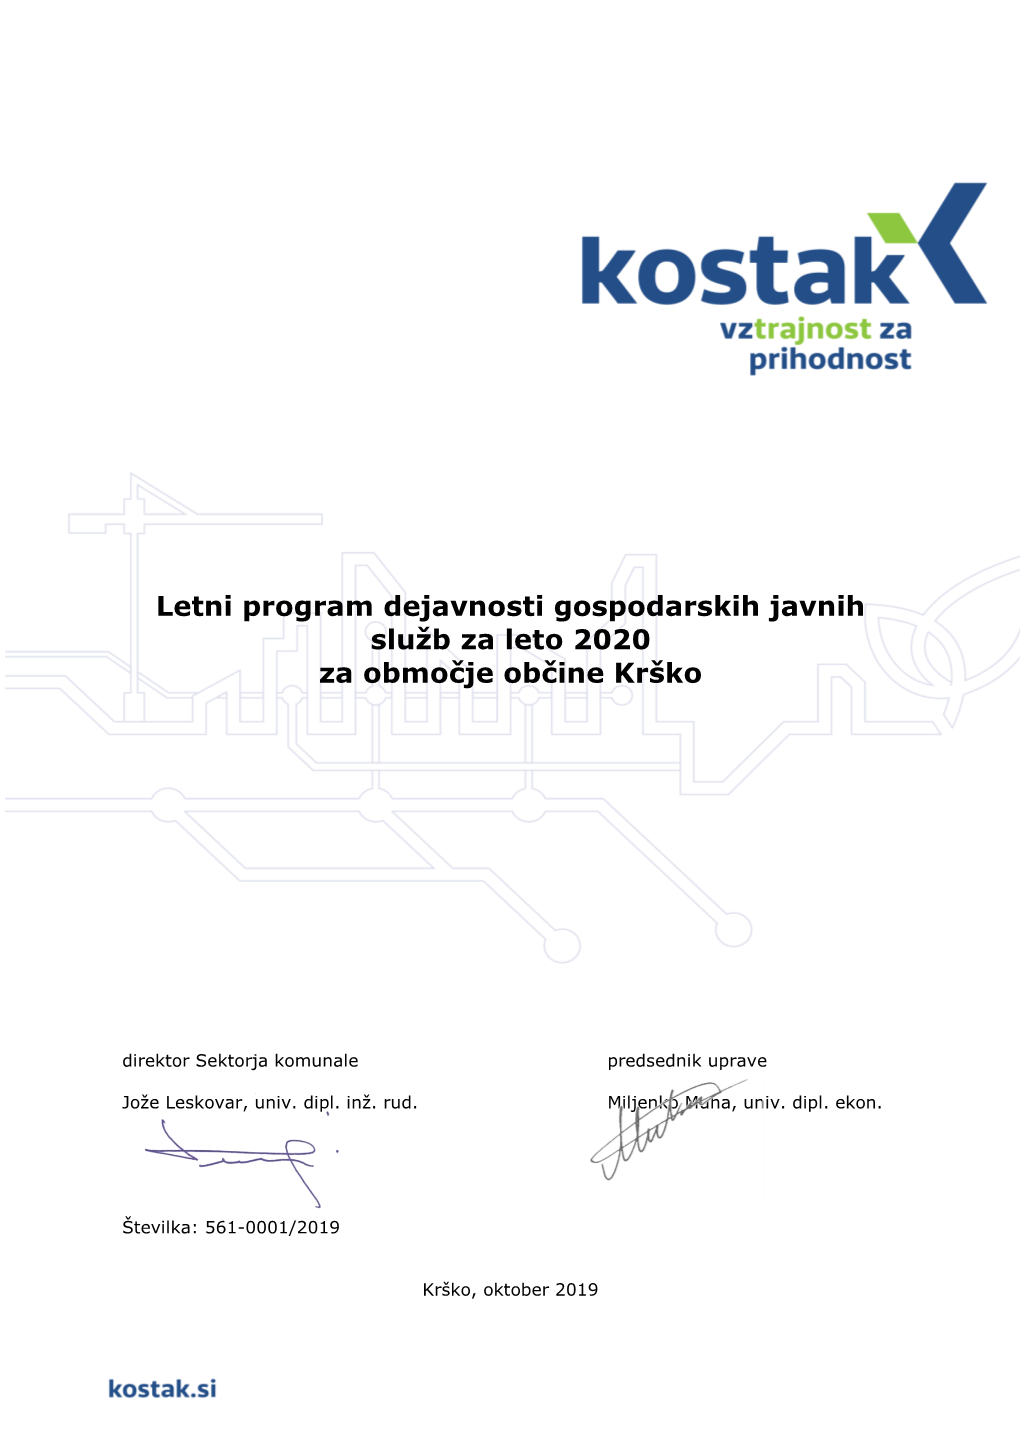 Letni Program Dejavnosti Gospodarskih Javnih Služb Za Leto 2020 Za Območje Občine Krško